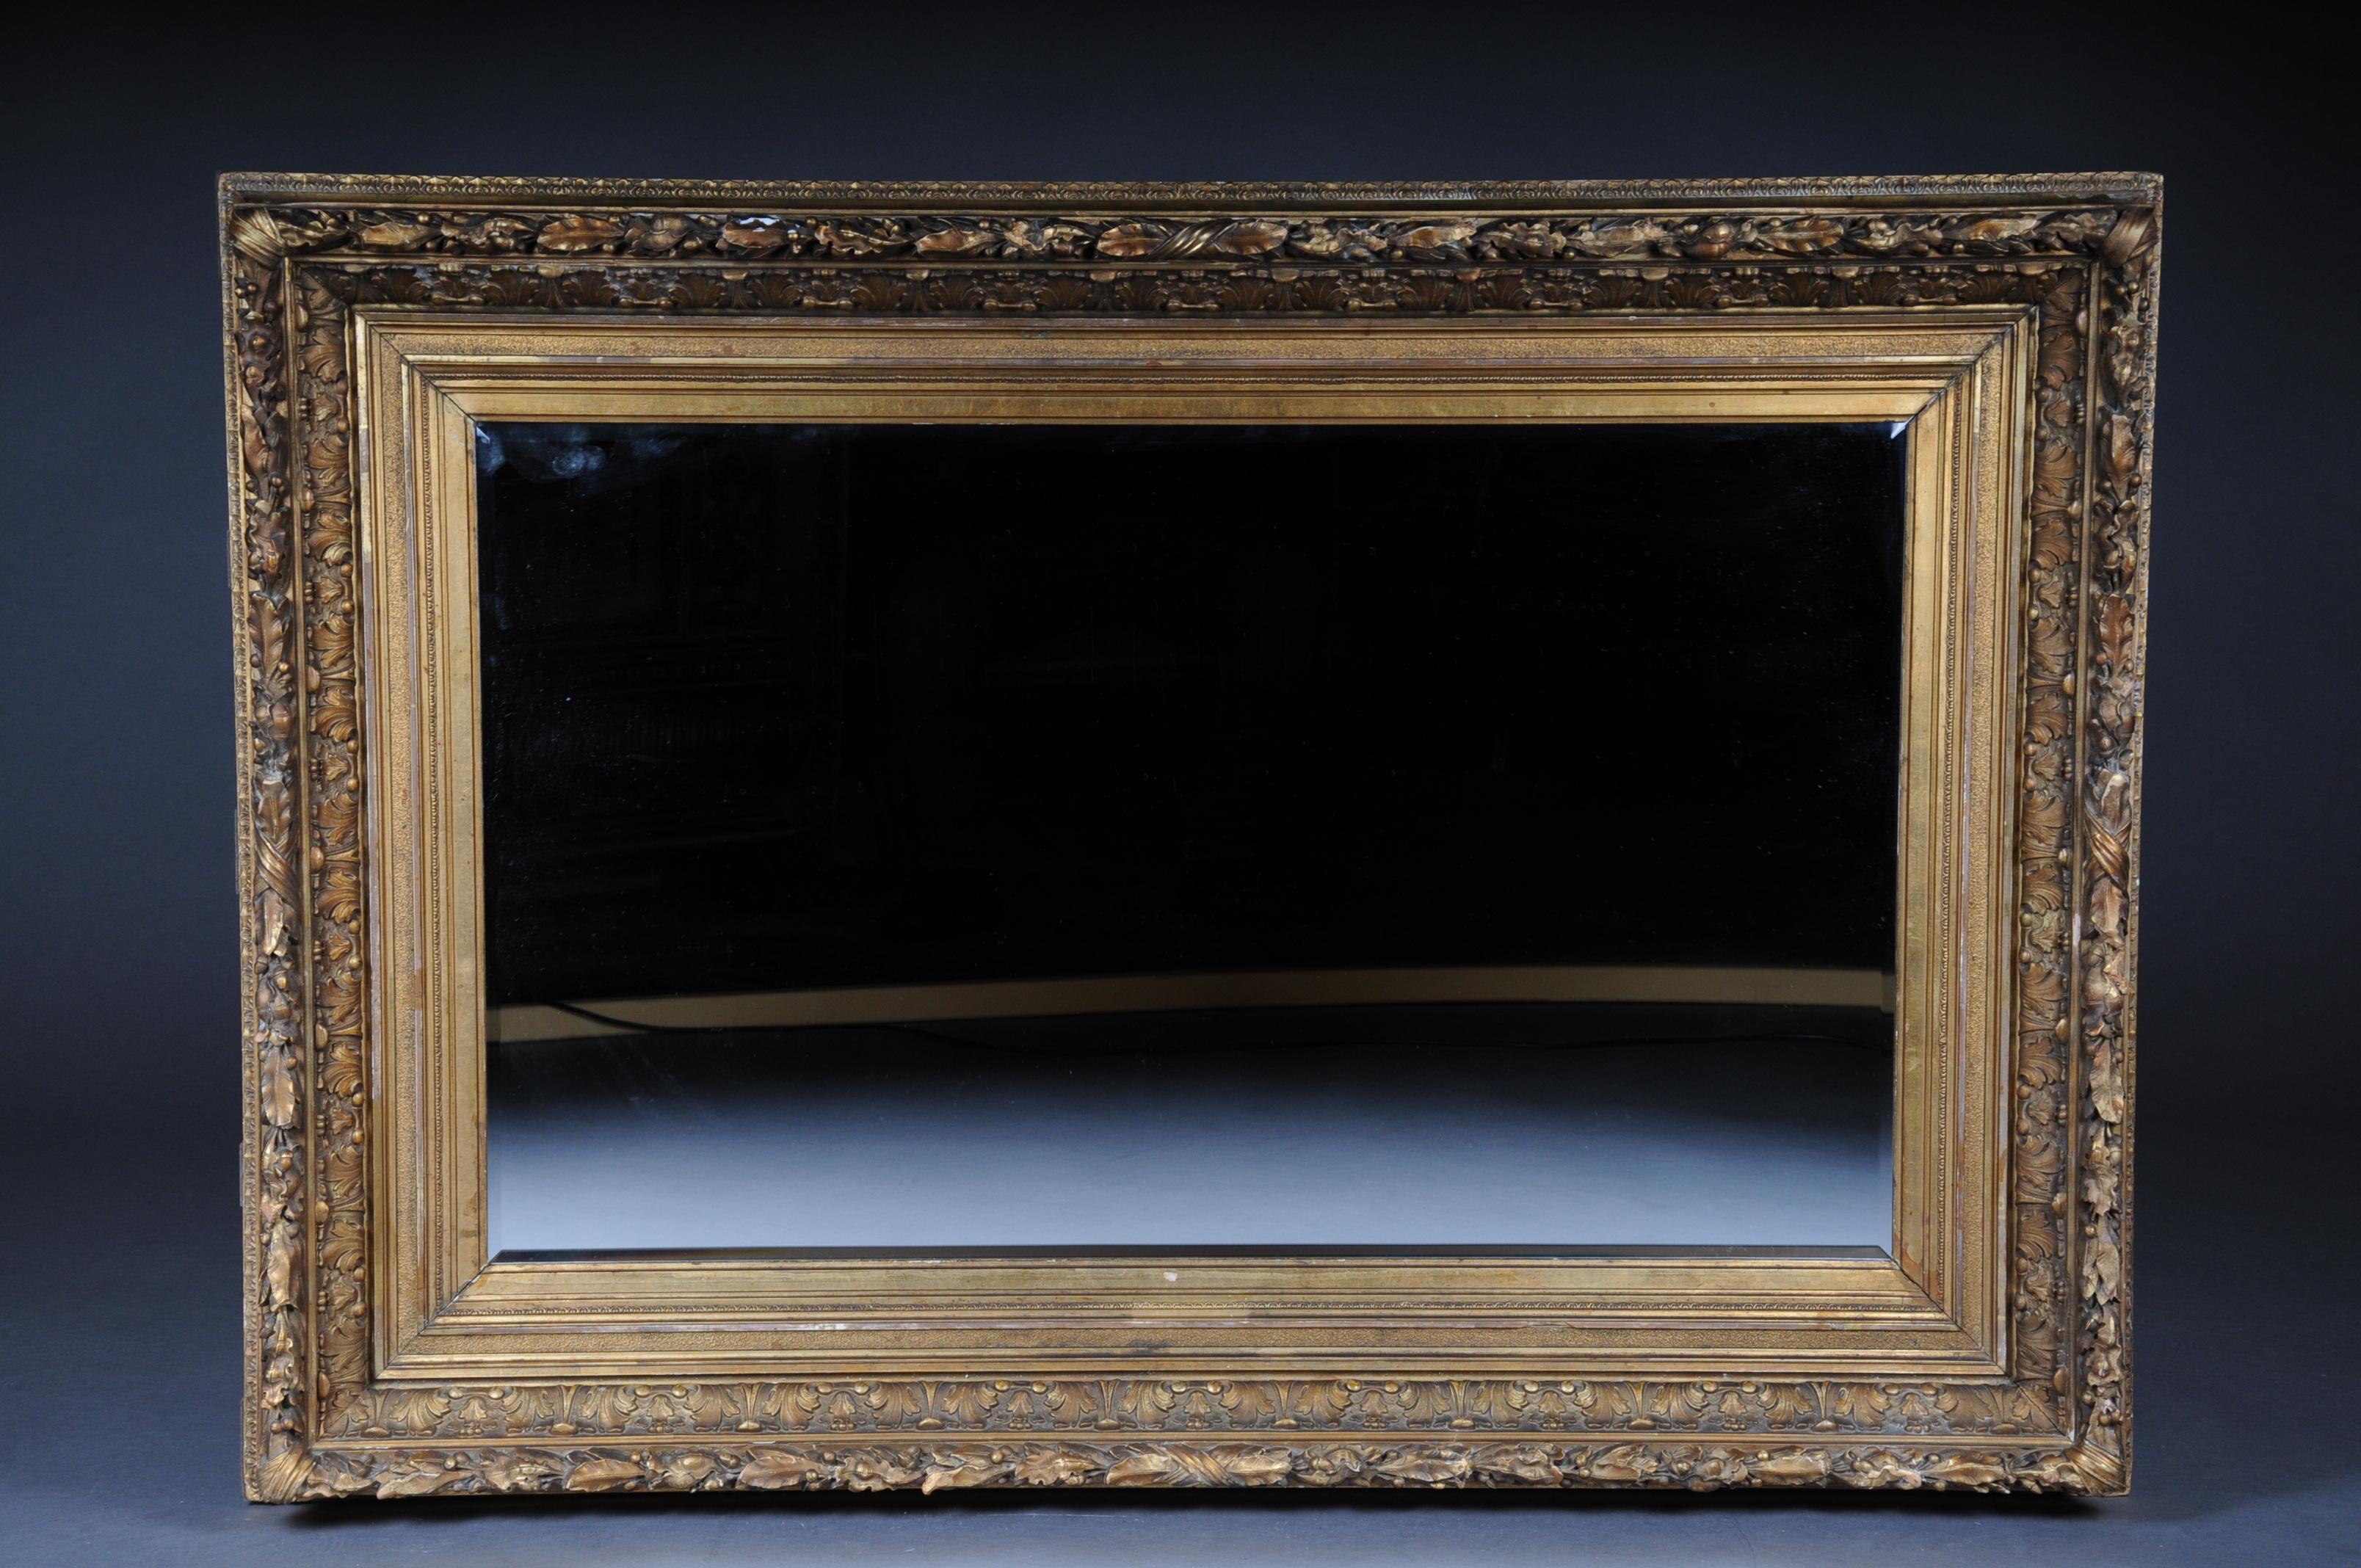 miroir mural orné du 19ème siècle cadre doré, doré, vers 1870

Miroir encadré d'un cadre baroque orné. Cadre entièrement serti d'or. Un miroir intemporel qui s'adapte à tous les foyers.

(M-43).